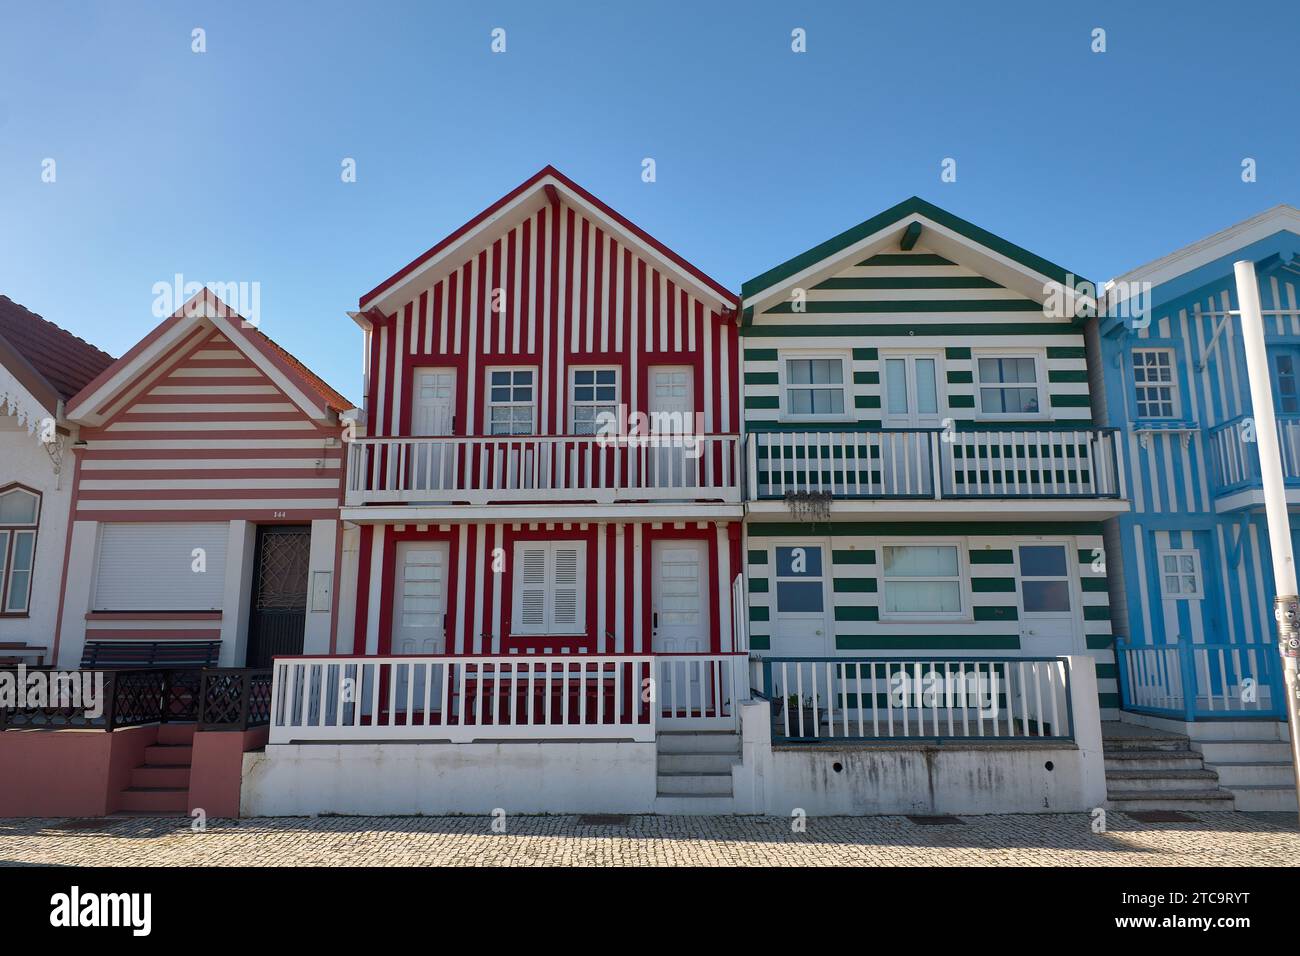 Las casas de colores de Costa Nova en Portugal que se les conoce como Palheiros. Los palheiros Era donde los marineros guardaban sus útiles de pesca. Stockfoto